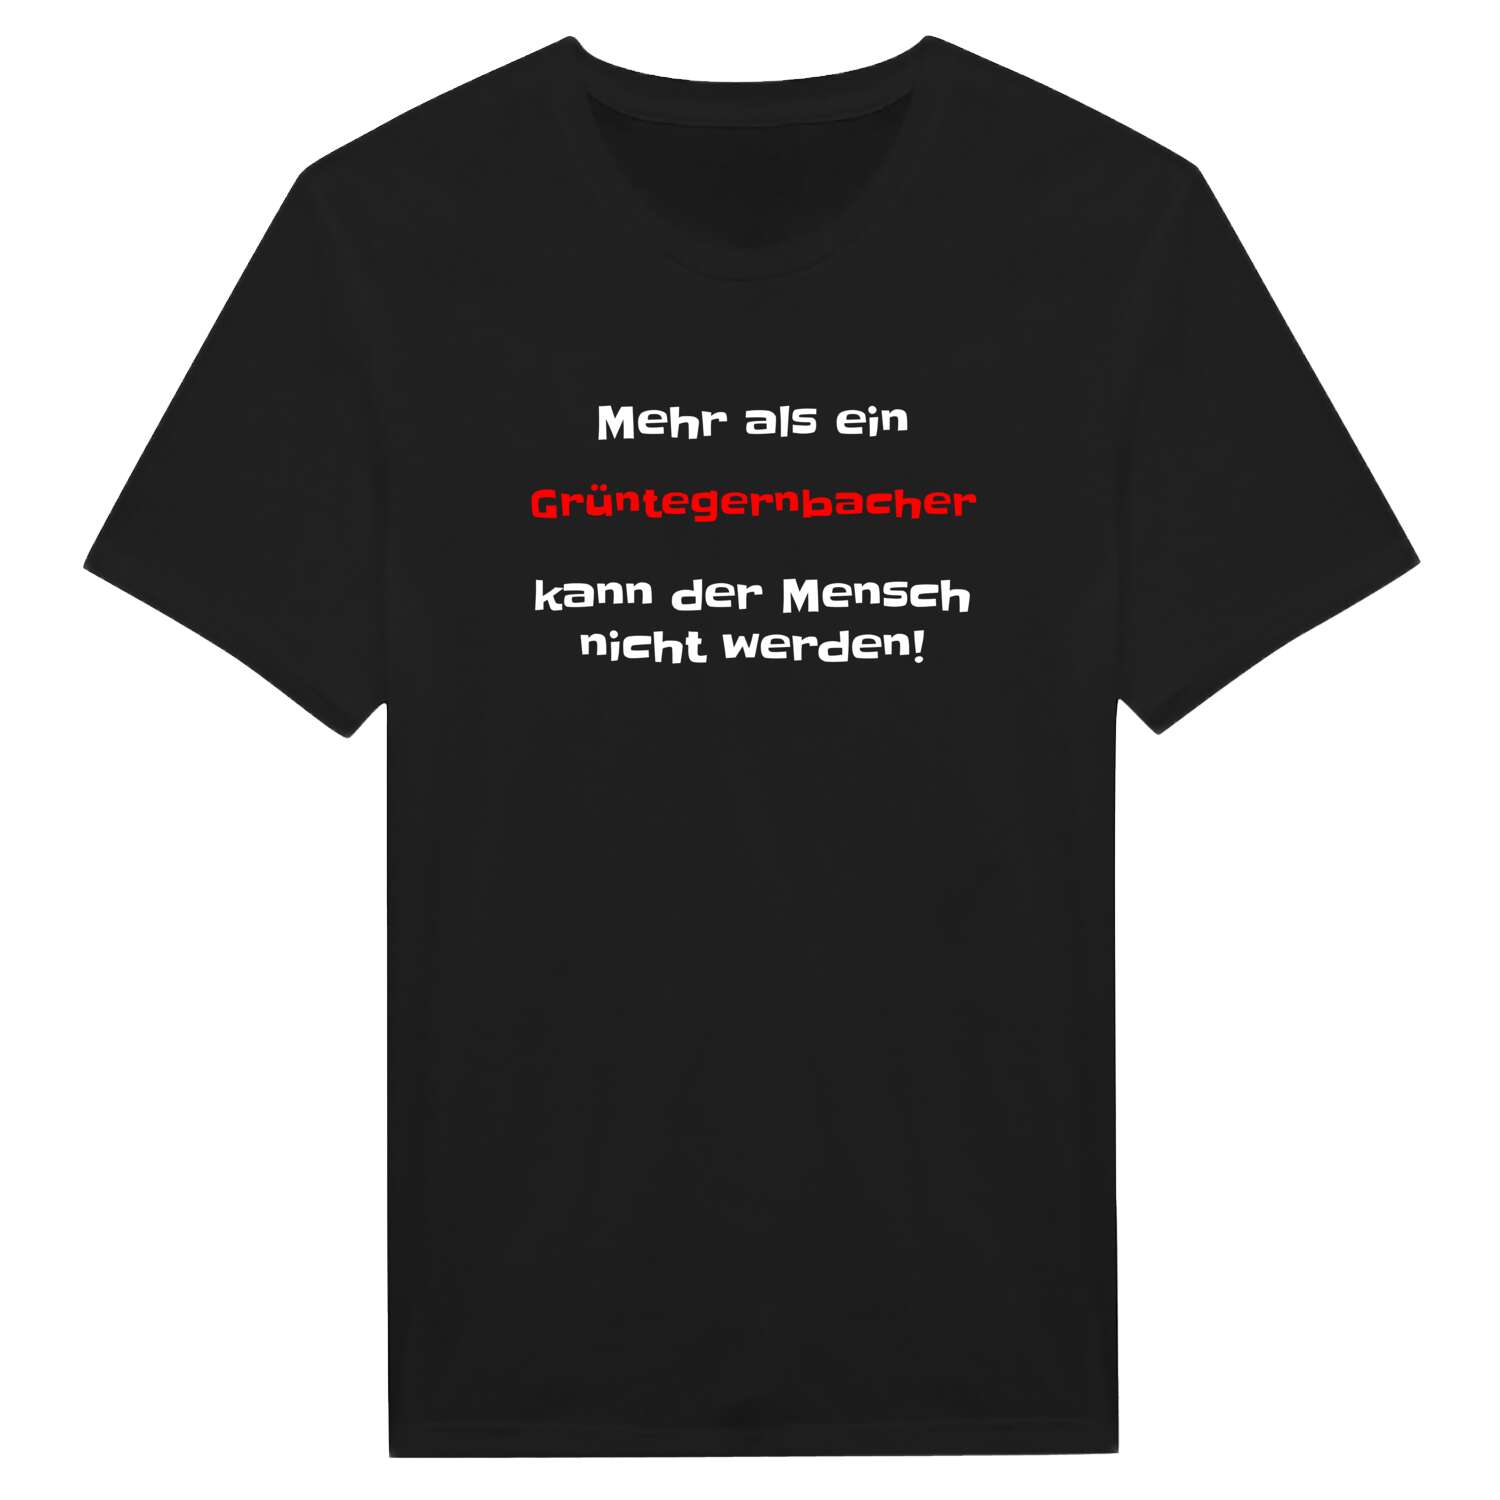 Grüntegernbach T-Shirt »Mehr als ein«